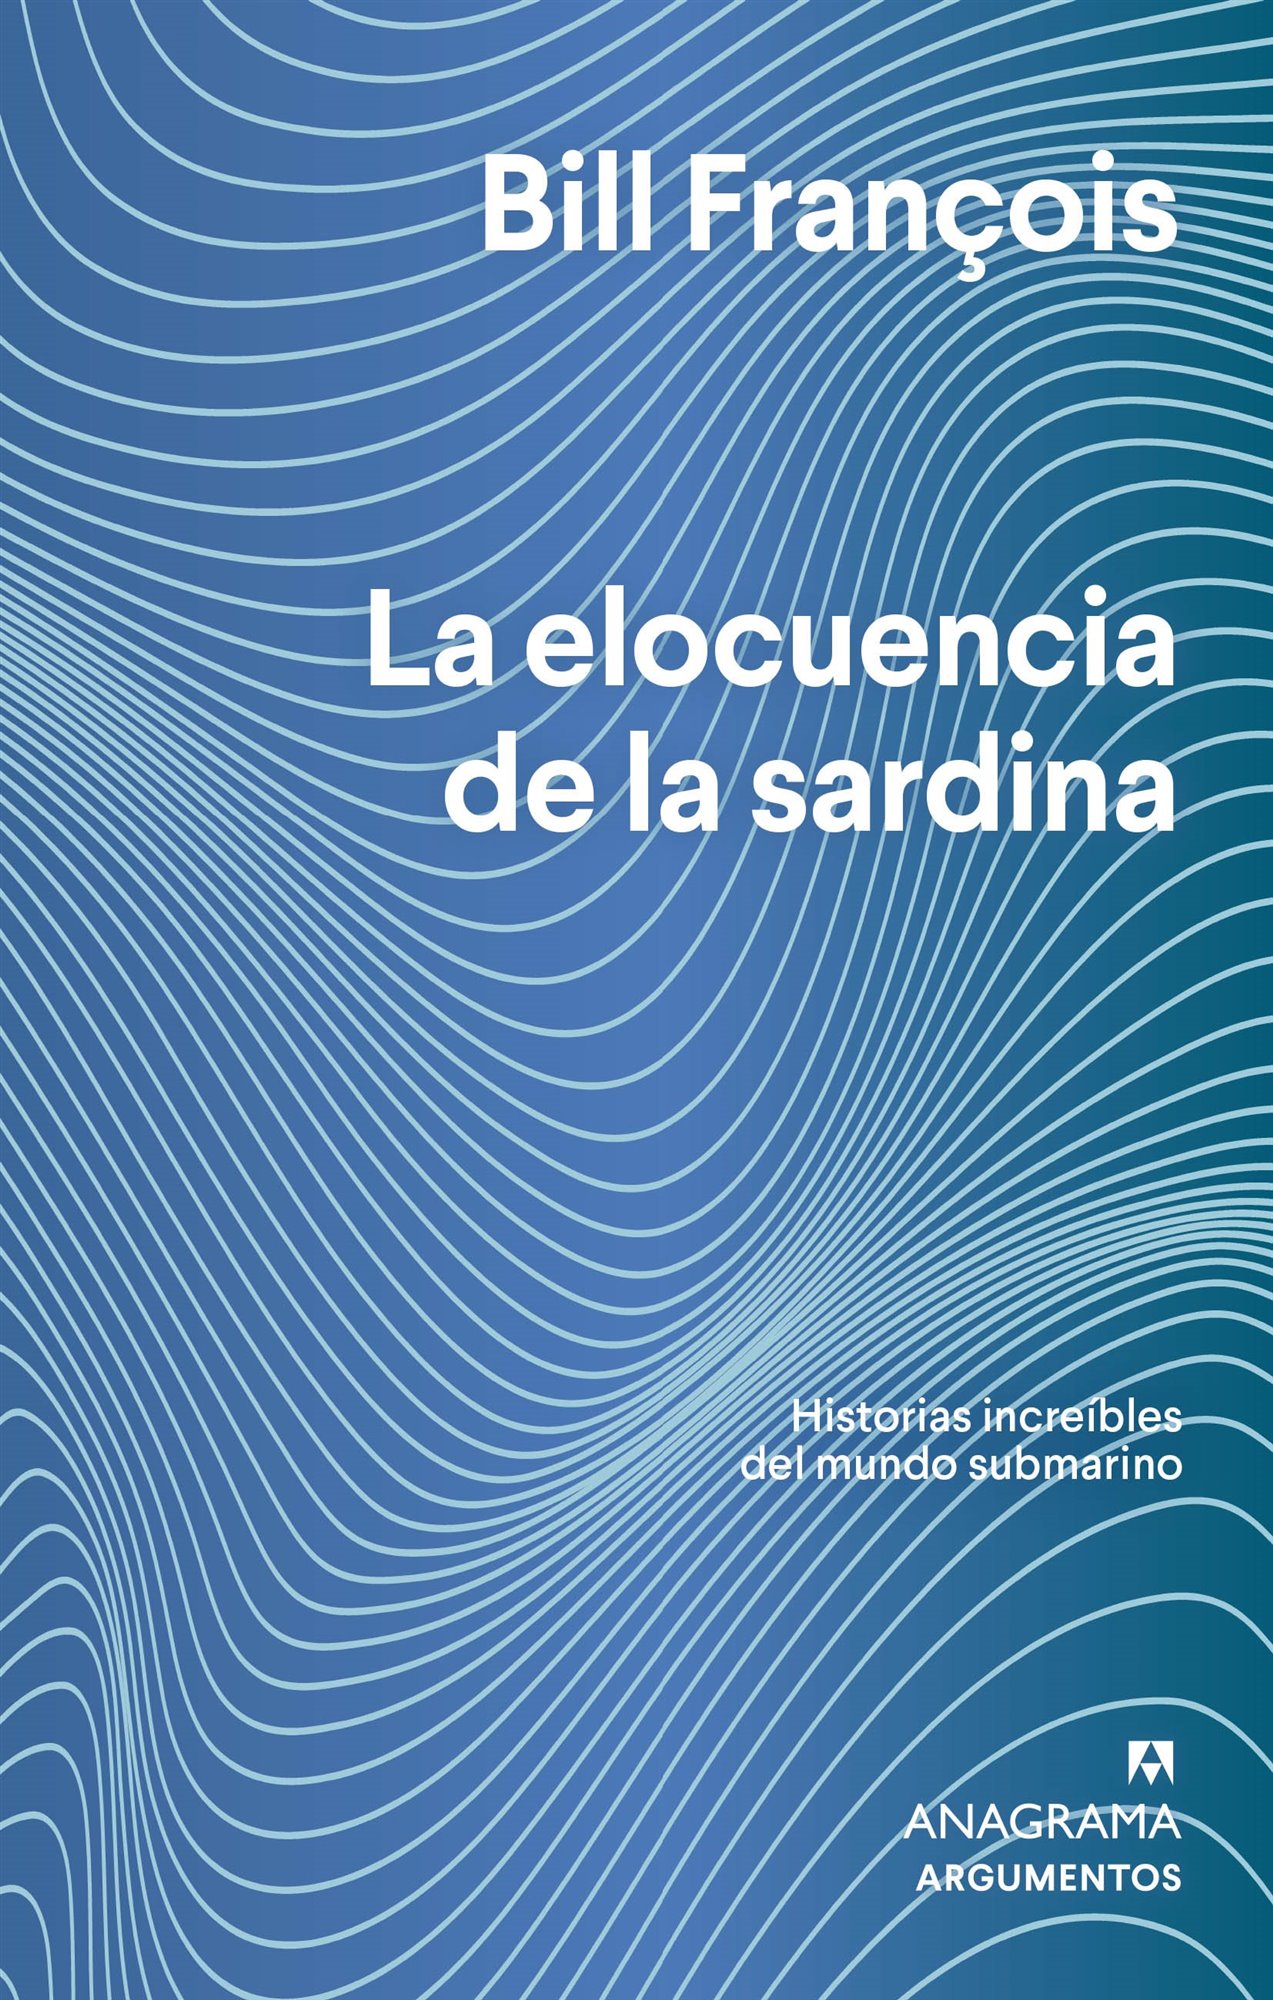 'La elocuencia de la sardina', Bill François (Anagrama)